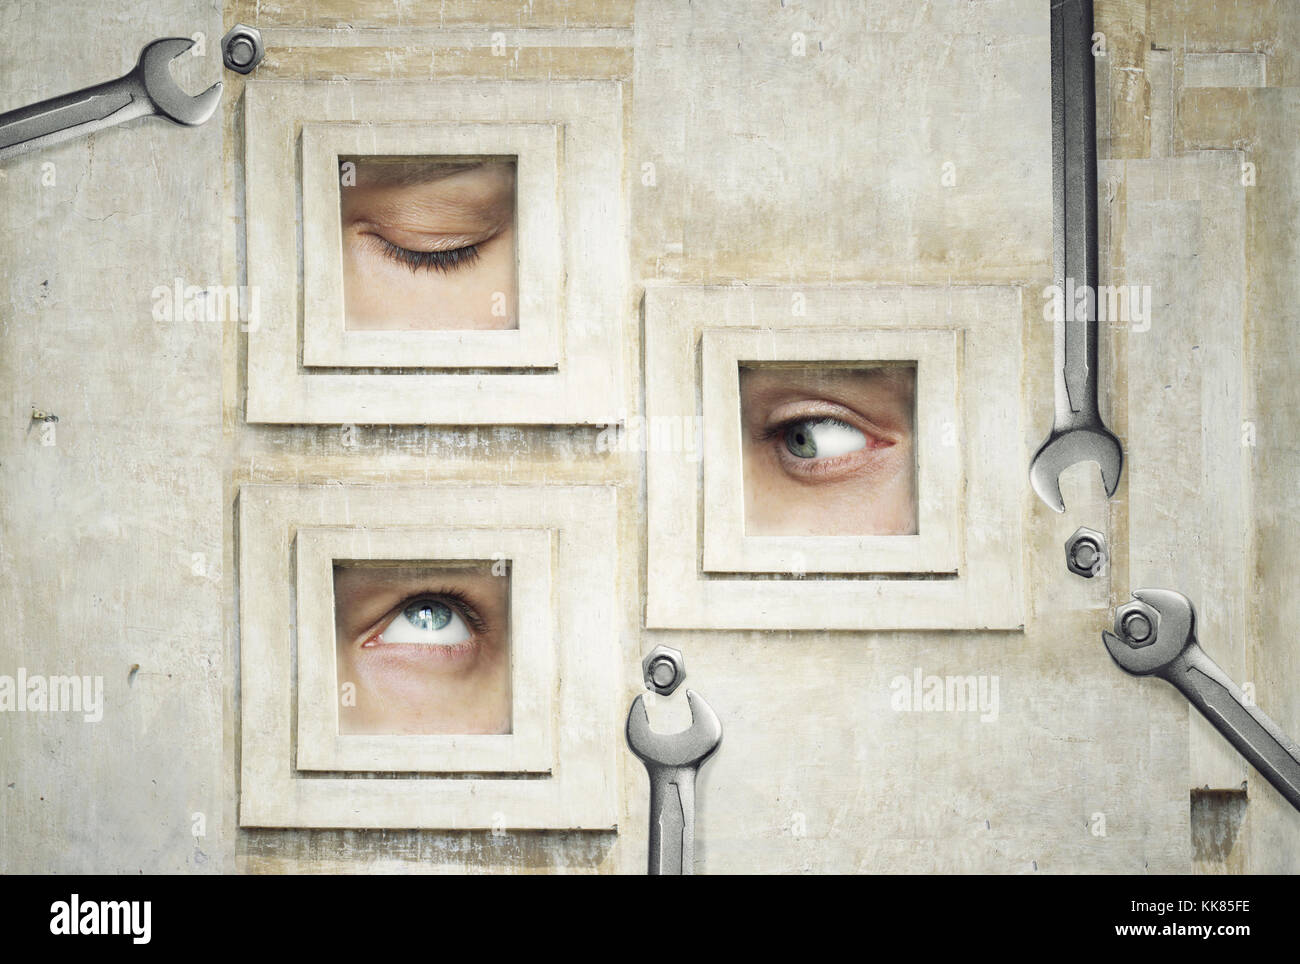 Divertente e composizione artistica di tre occhi umani Foto Stock